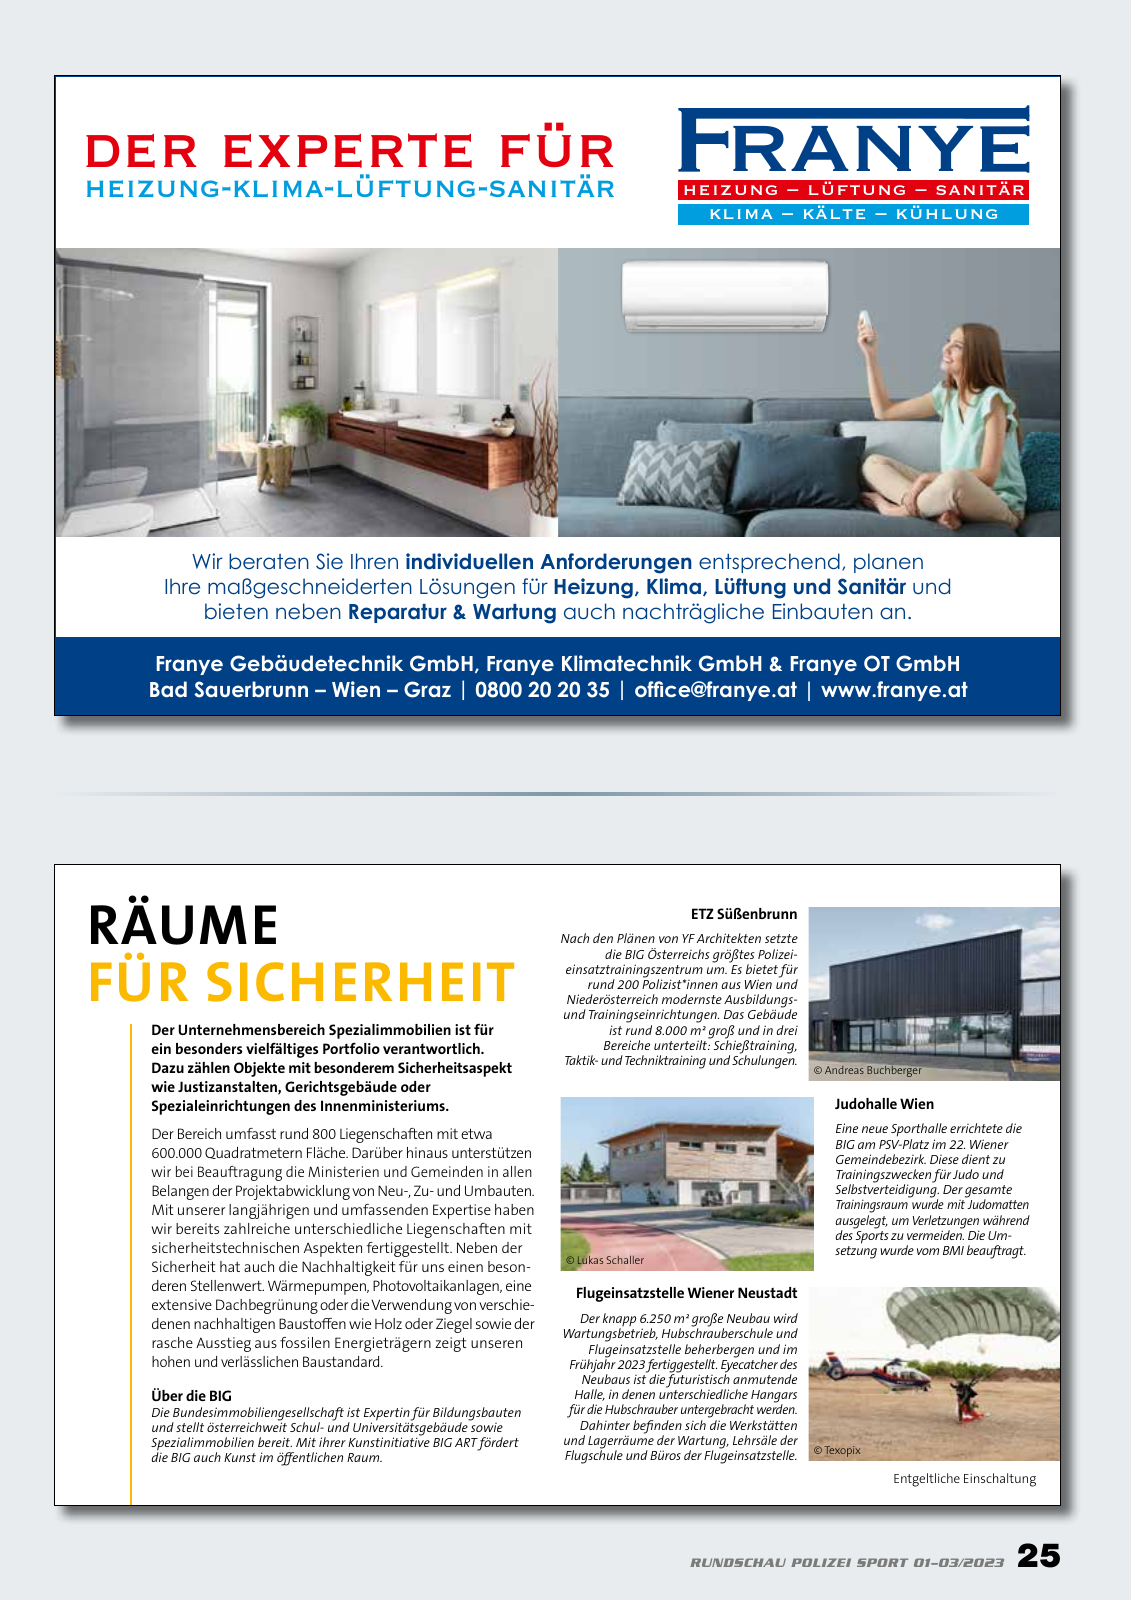 Vorschau Rundschau Polizei Sport 01-03/2023 Seite 25